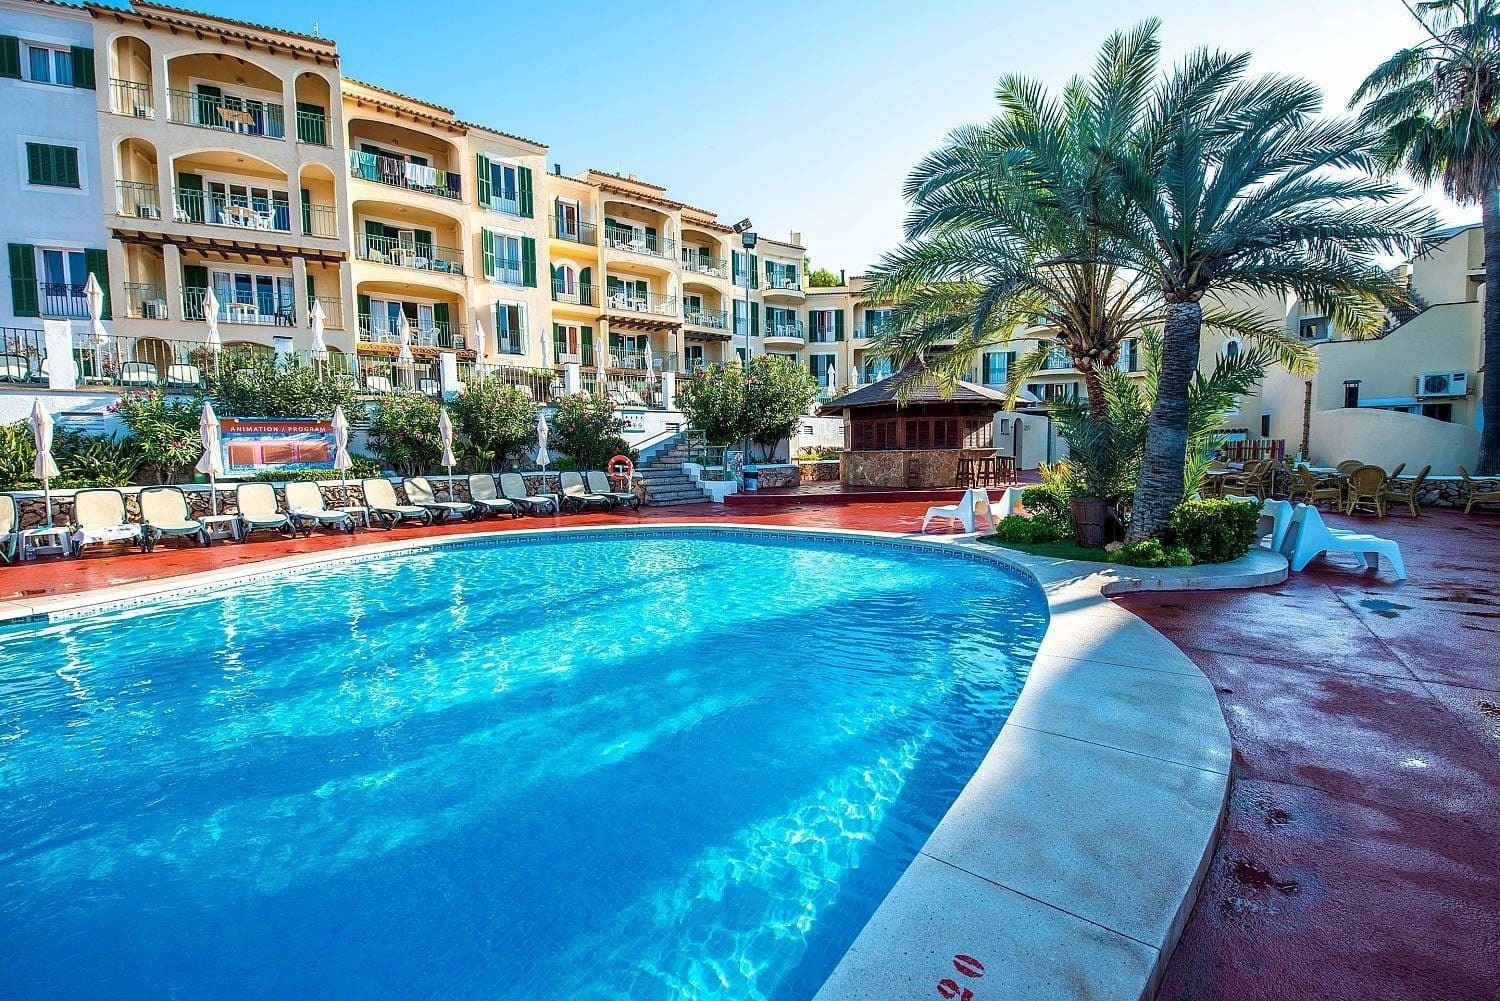 Outdoor pool of the Ona Cala Pi hotel, in Majorca